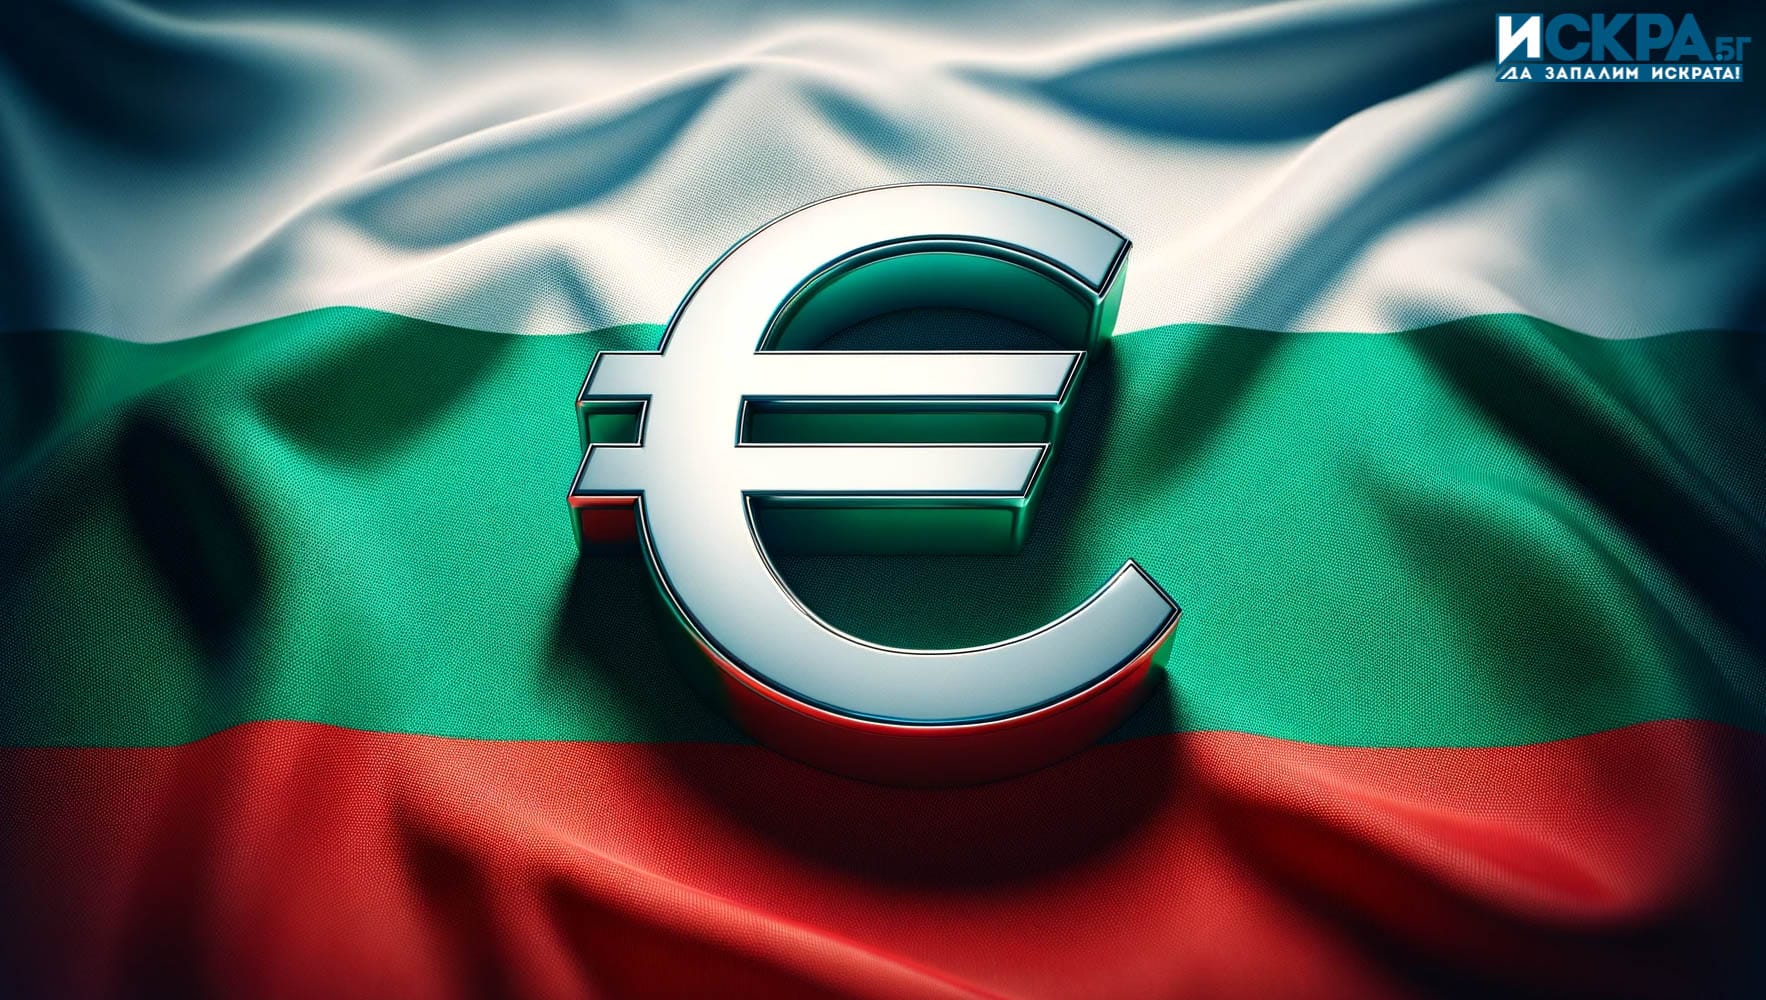 България стои пред решаващ момент – дали да приеме еврото